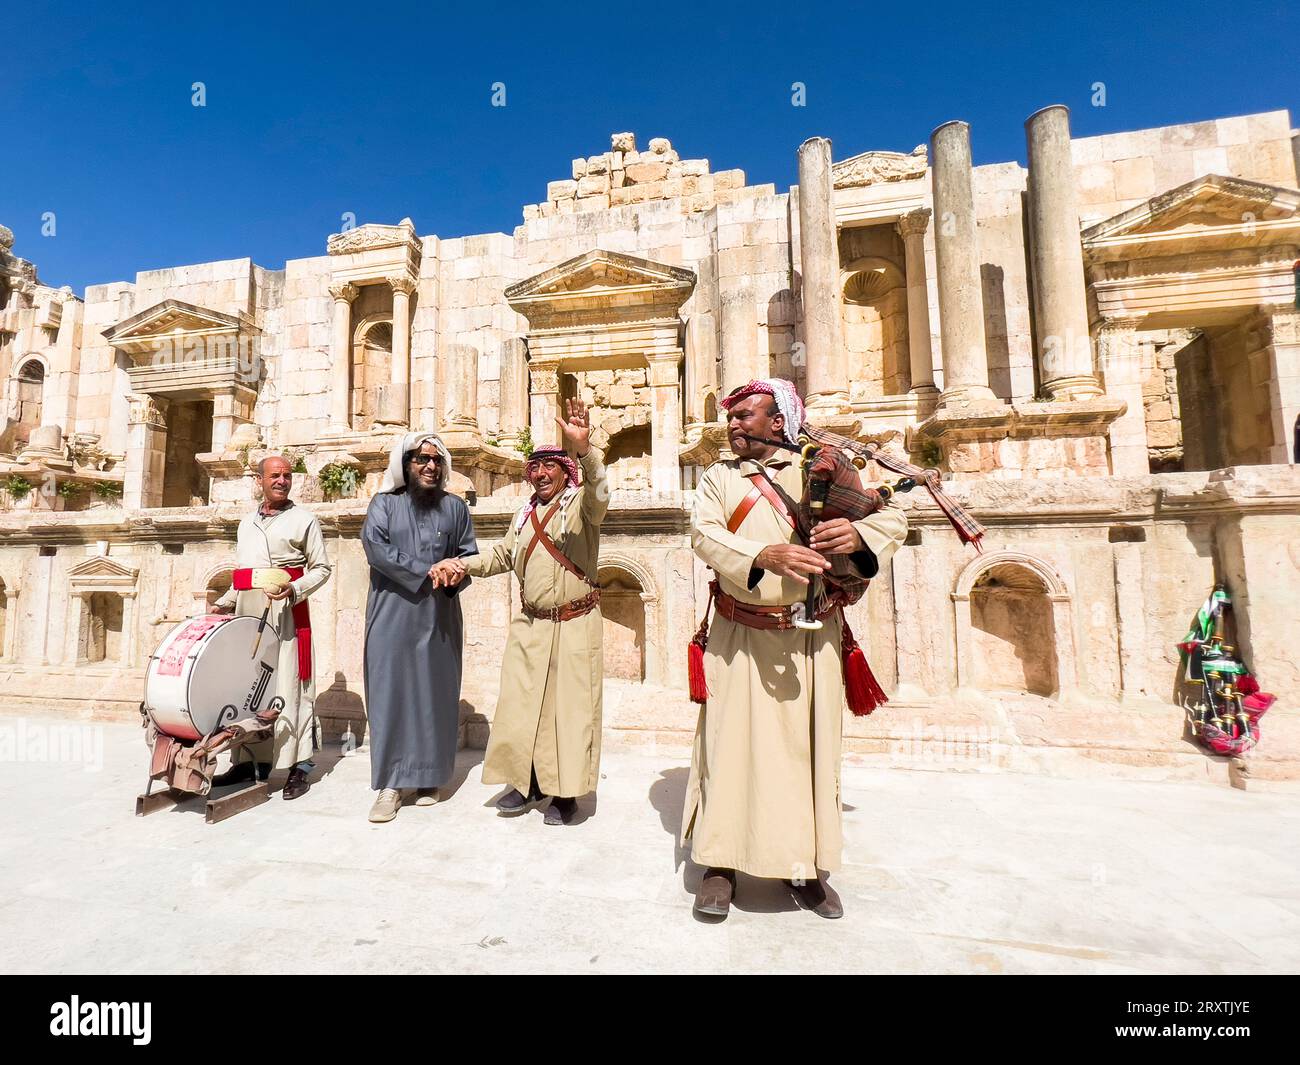 Interprètes au grand Théâtre du Nord dans l'ancienne ville de Jerash, qui aurait été fondée par Alexandre le Grand, Jerash, Jordanie, Moyen-Orient Banque D'Images